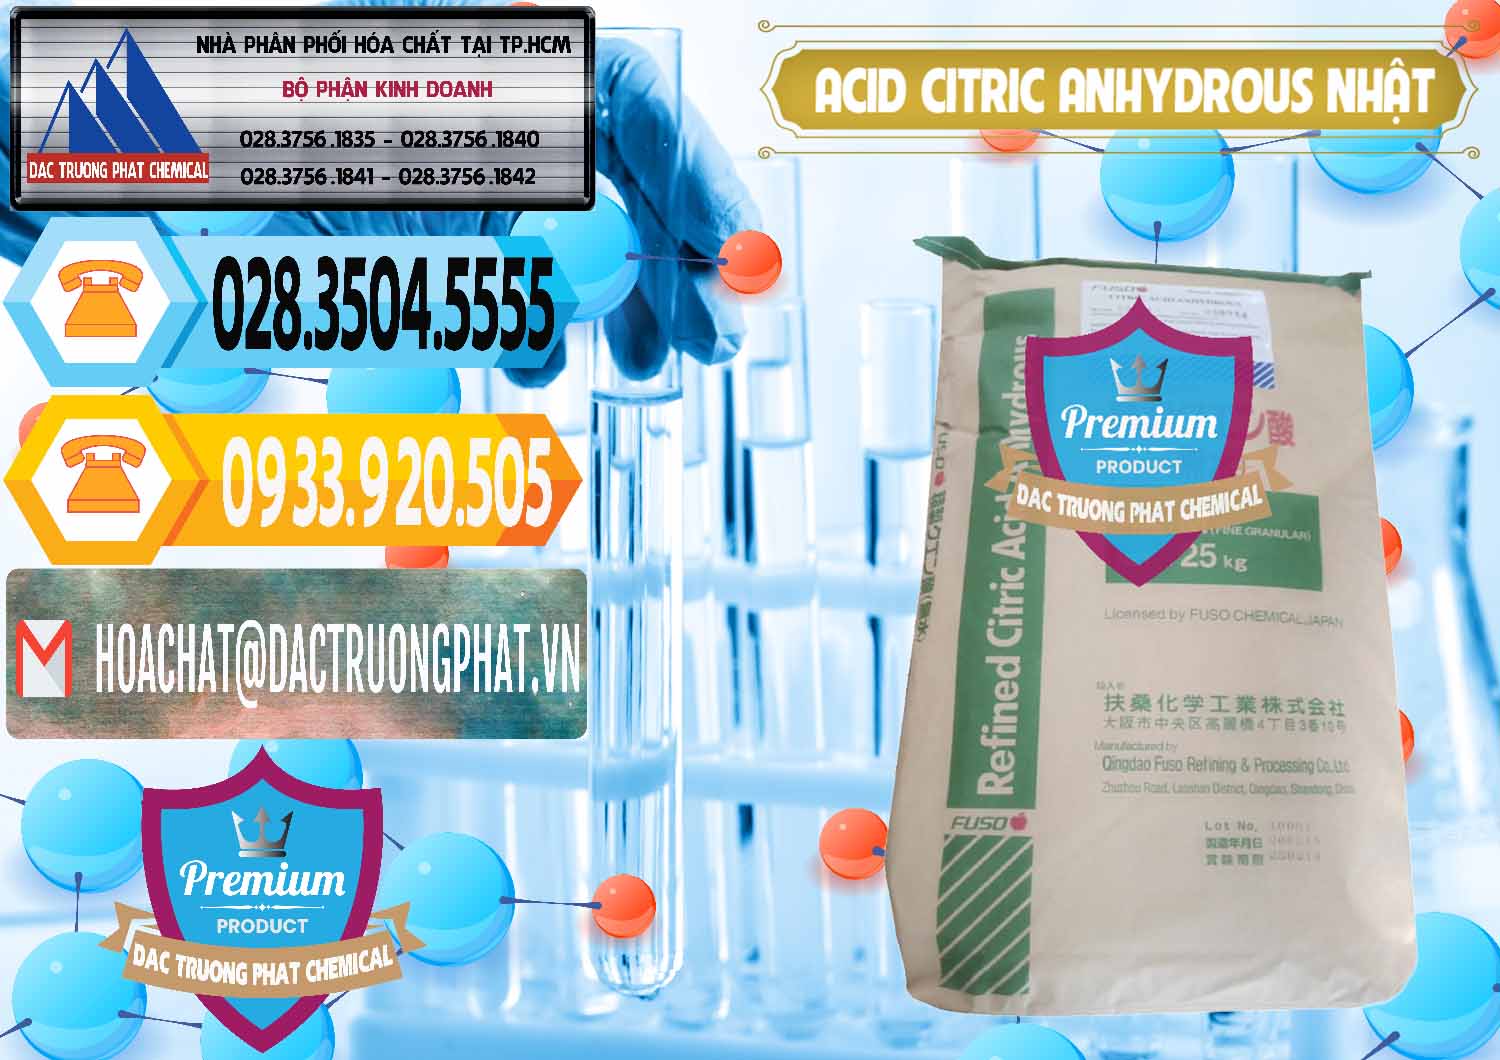 Nơi chuyên kinh doanh - bán Acid Citric - Axit Citric Anhydrous FUSO Nhật Japan - 0439 - Bán và cung cấp hóa chất tại TP.HCM - hoachattayrua.net